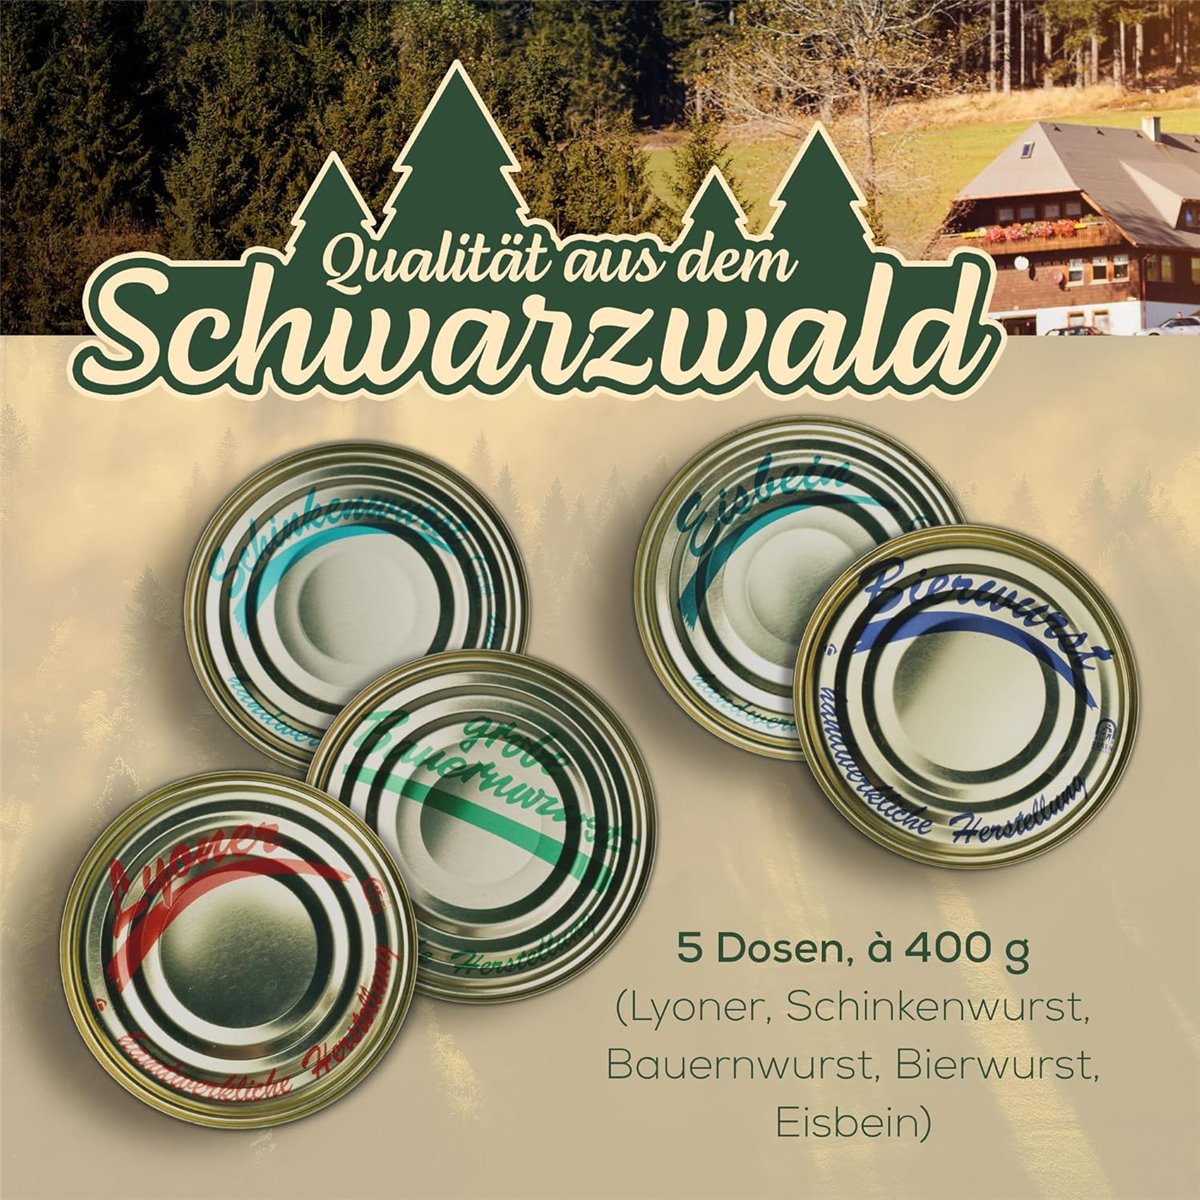 Schwarzwald Maxi Spar Sortiment | Vorratspaket
